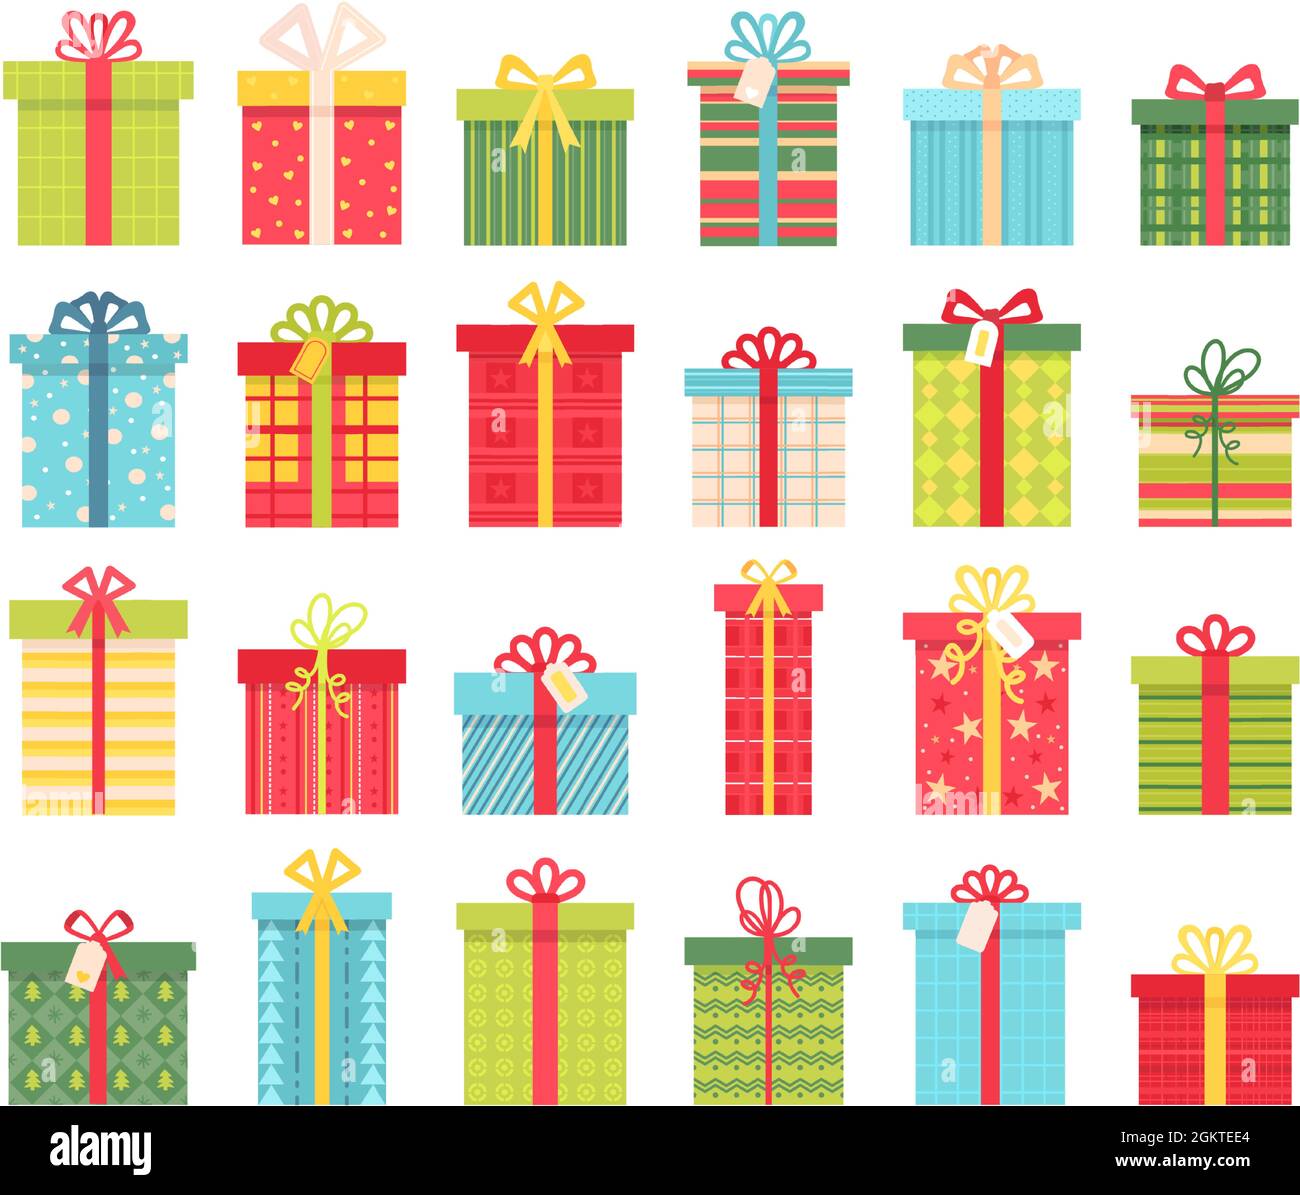 Flache Geschenkboxen mit Schleifchen, Geschenke zum Geburtstag oder zu weihnachten. Cartoon-Verpackung Verpackung Designs. Winter Urlaub Dekoration Vektor-Set Stock Vektor